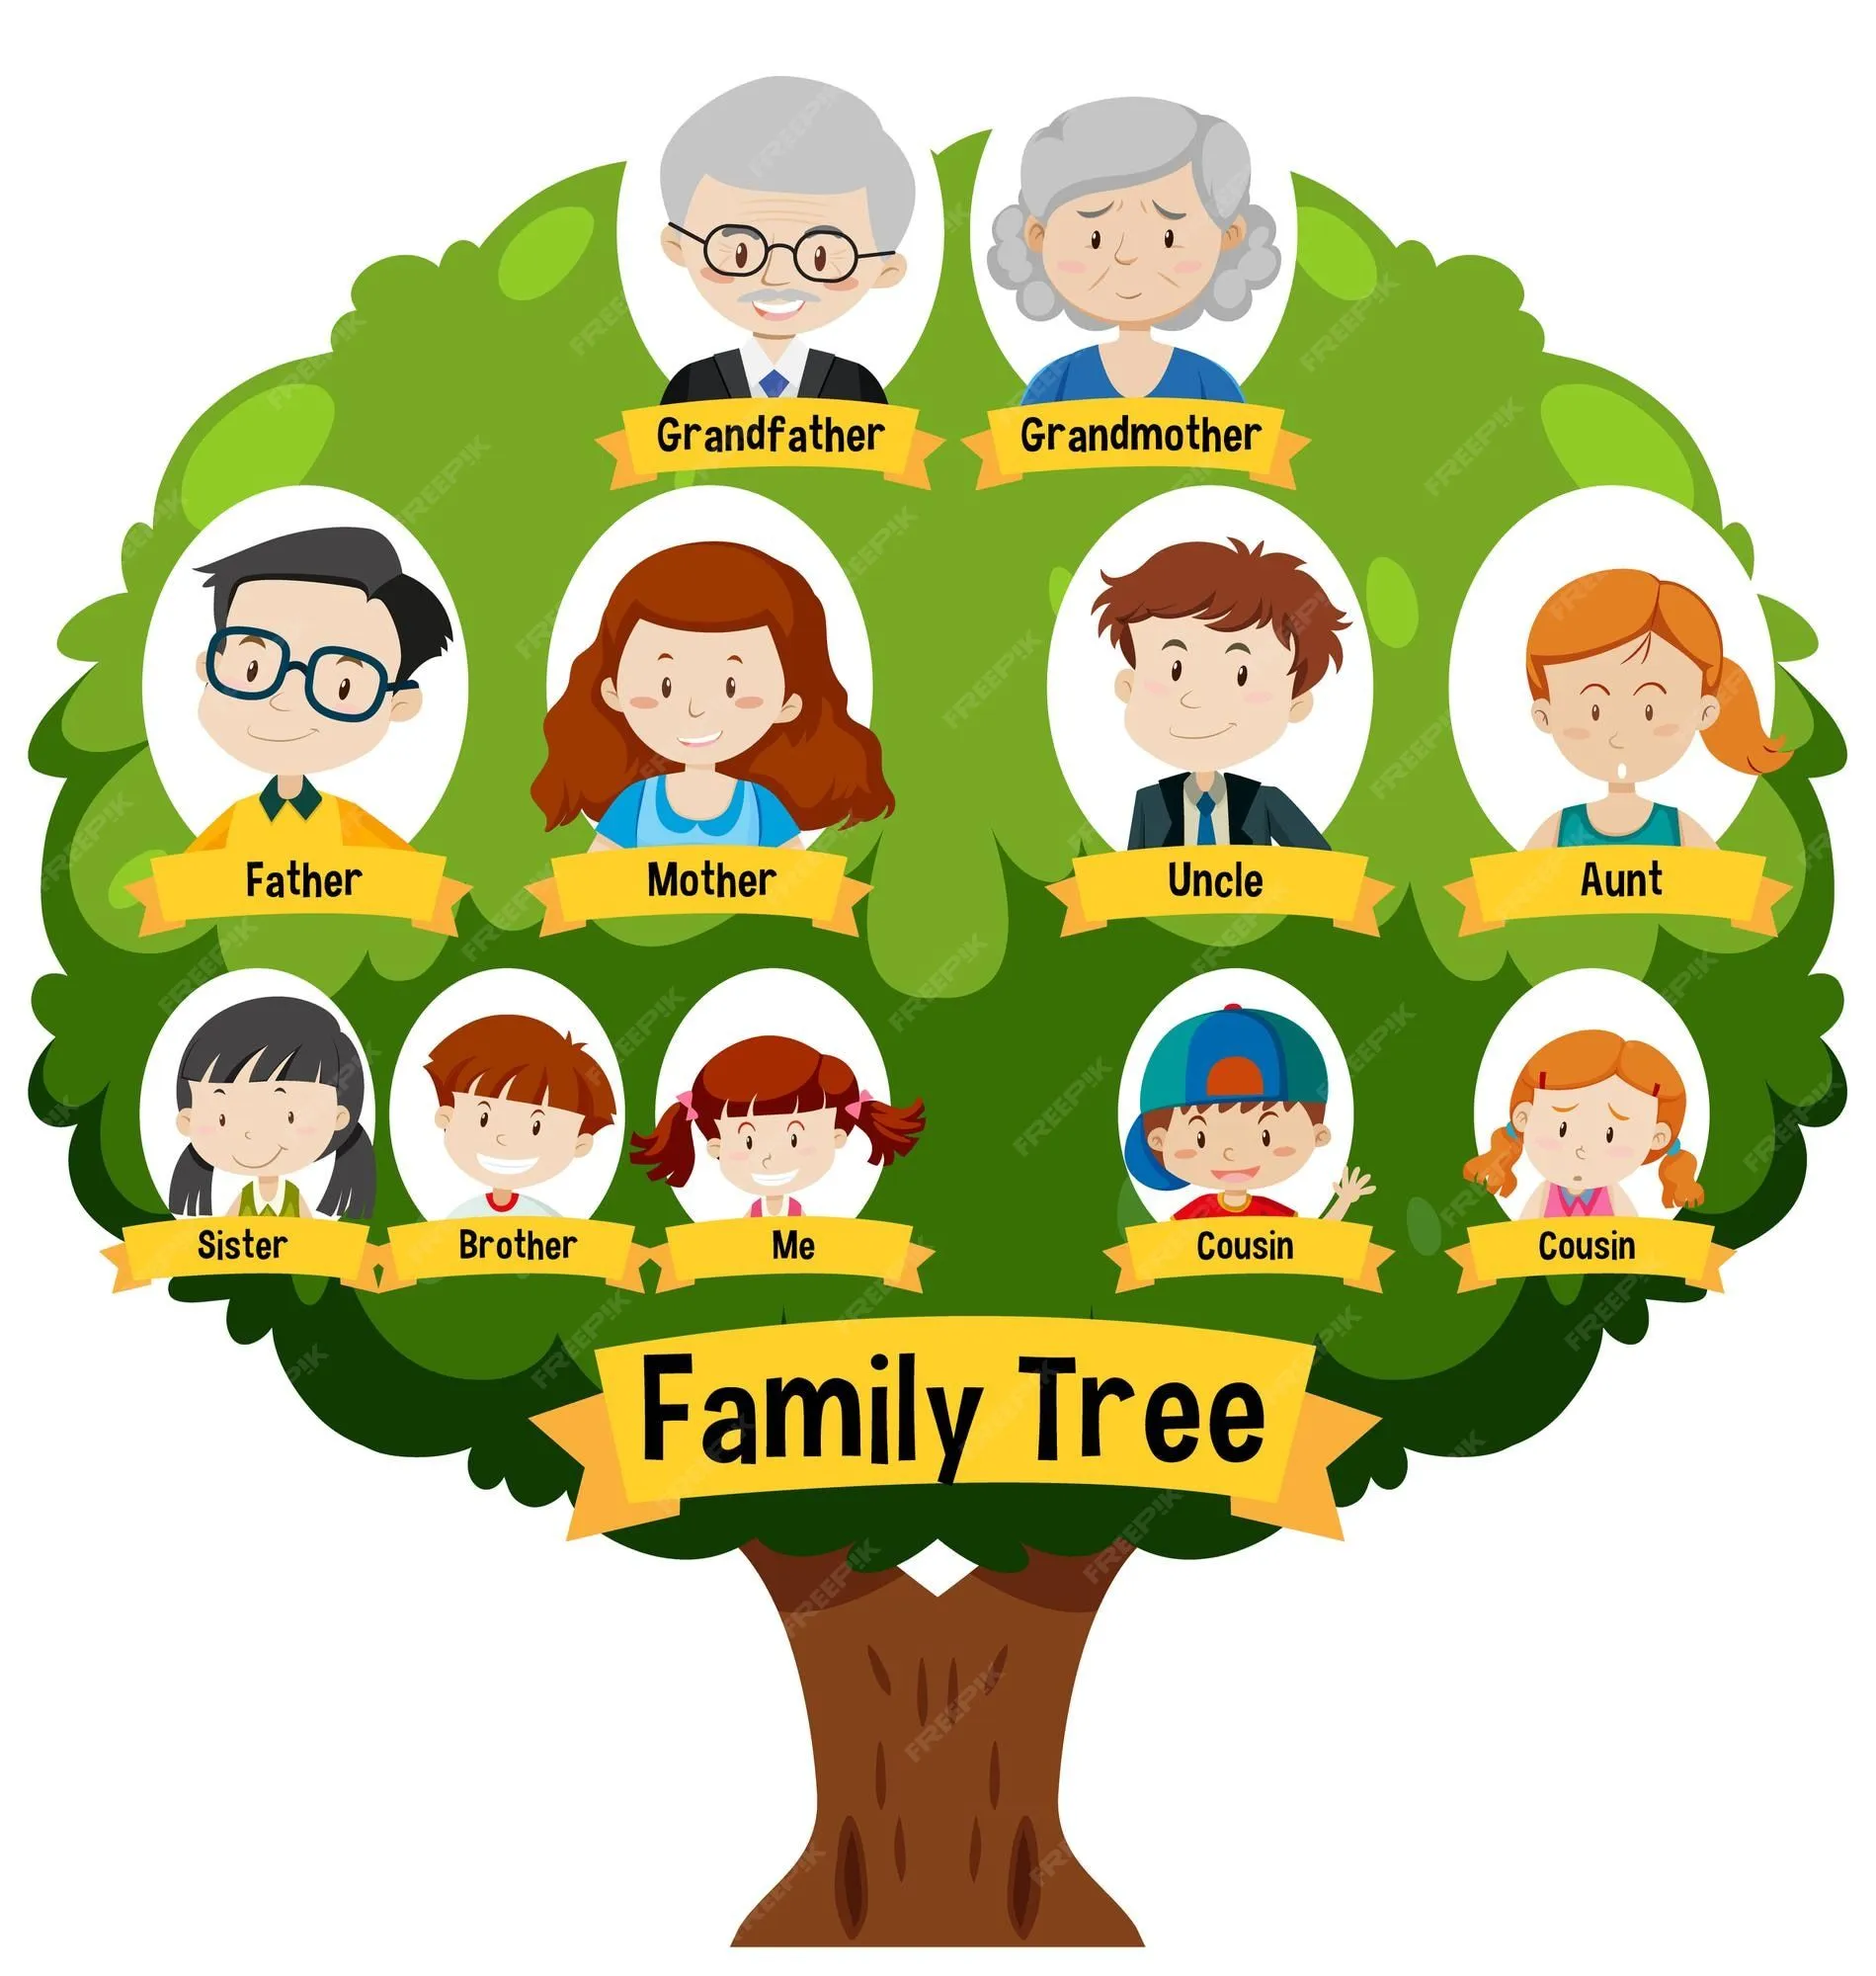 Imágenes de Arbol Genealogico Familia - Descarga gratuita en Freepik